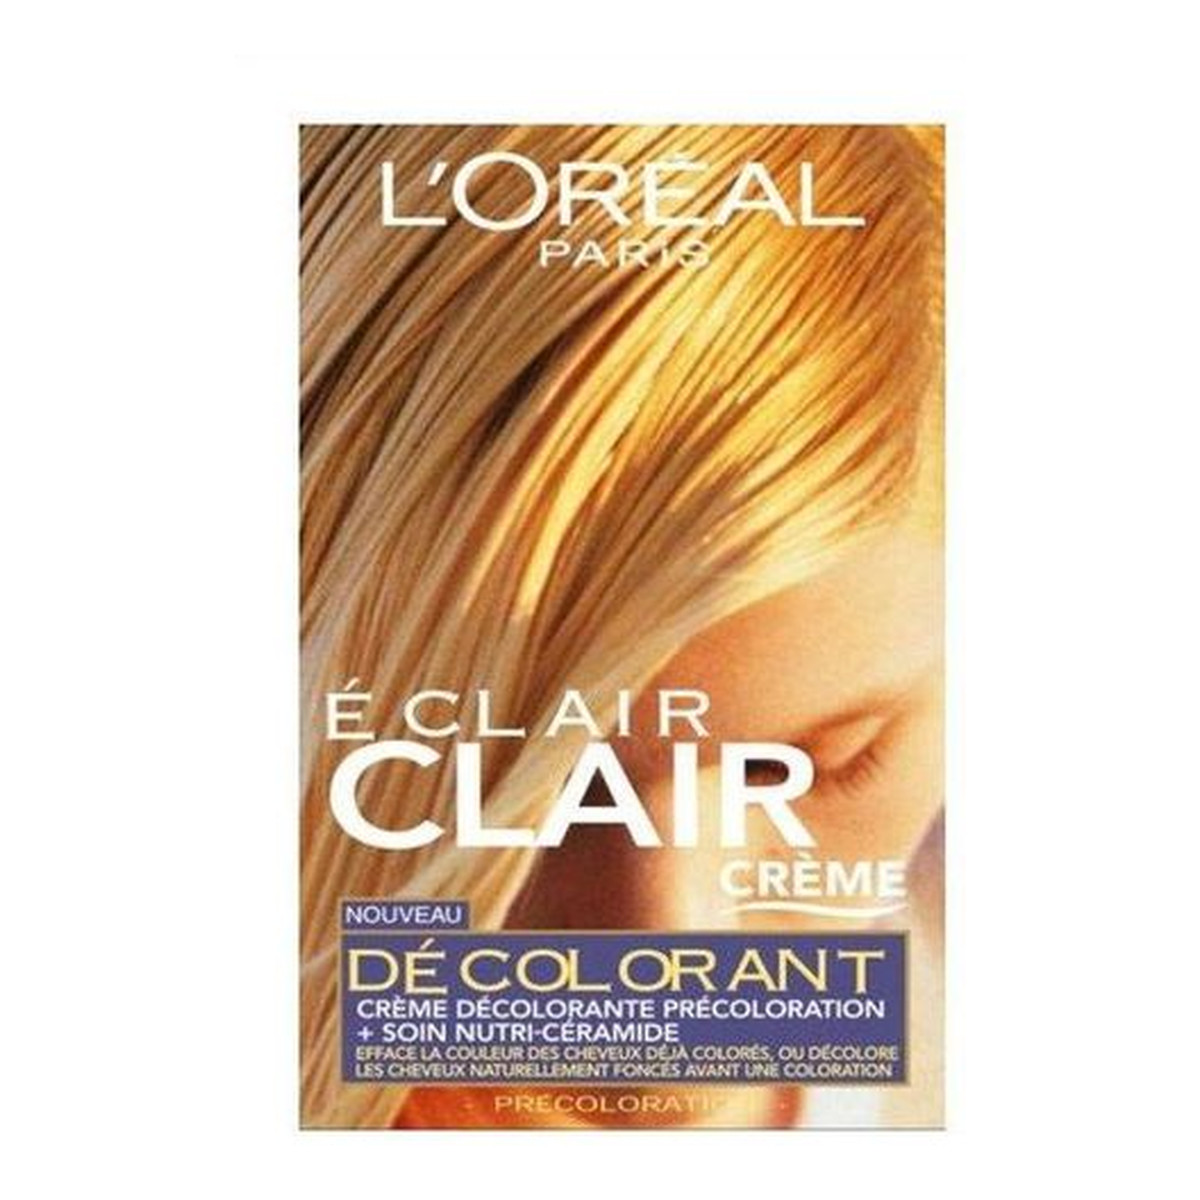 L'Oreal Paris Eclair Clair Creme Odbarwiacz do Włosów 120ml